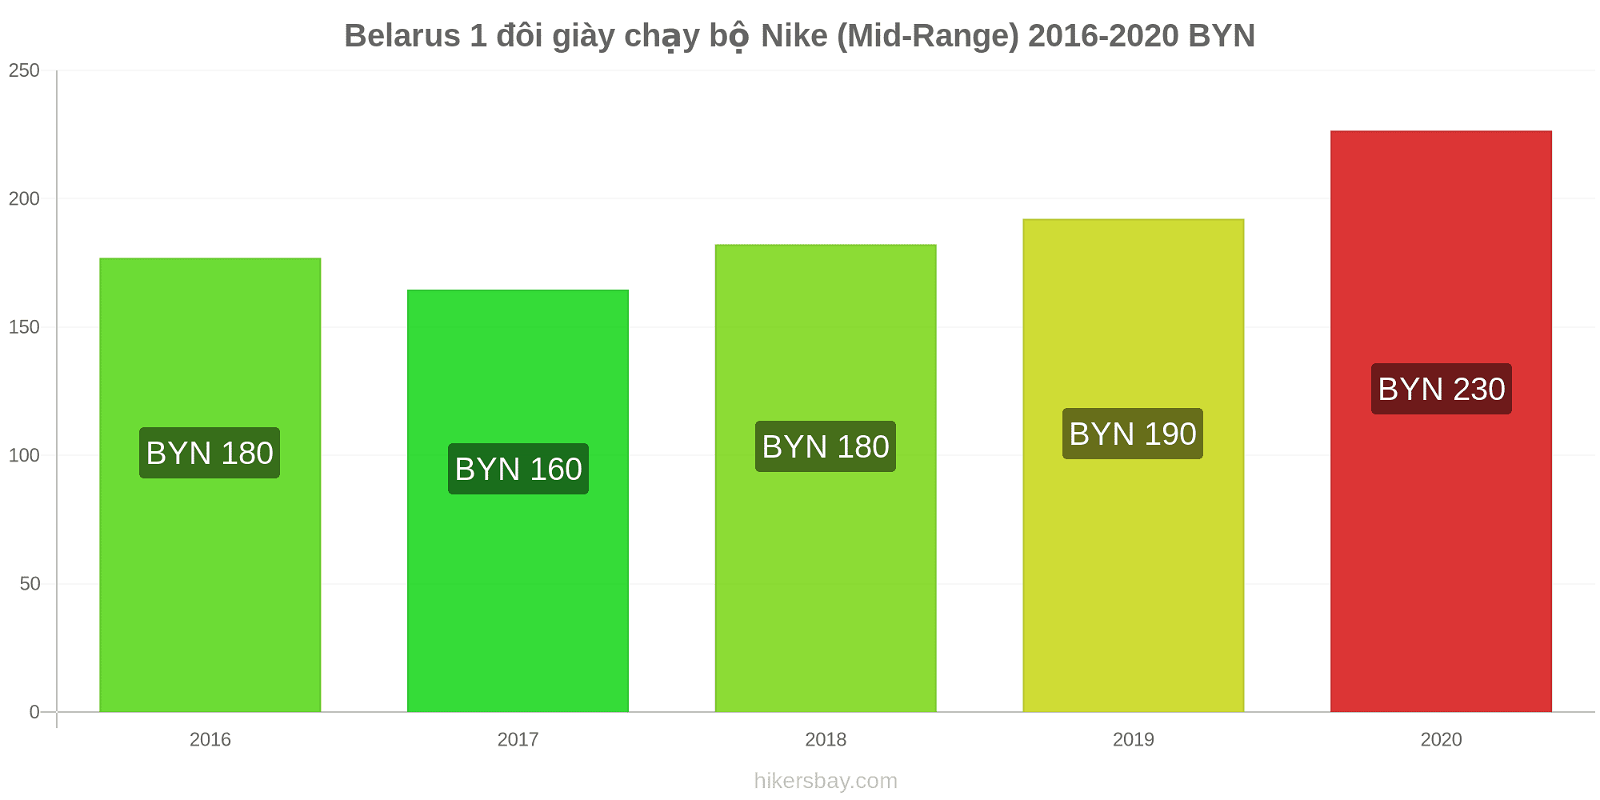 Belarus thay đổi giá 1 đôi giày chạy bộ Nike (Mid-Range) hikersbay.com